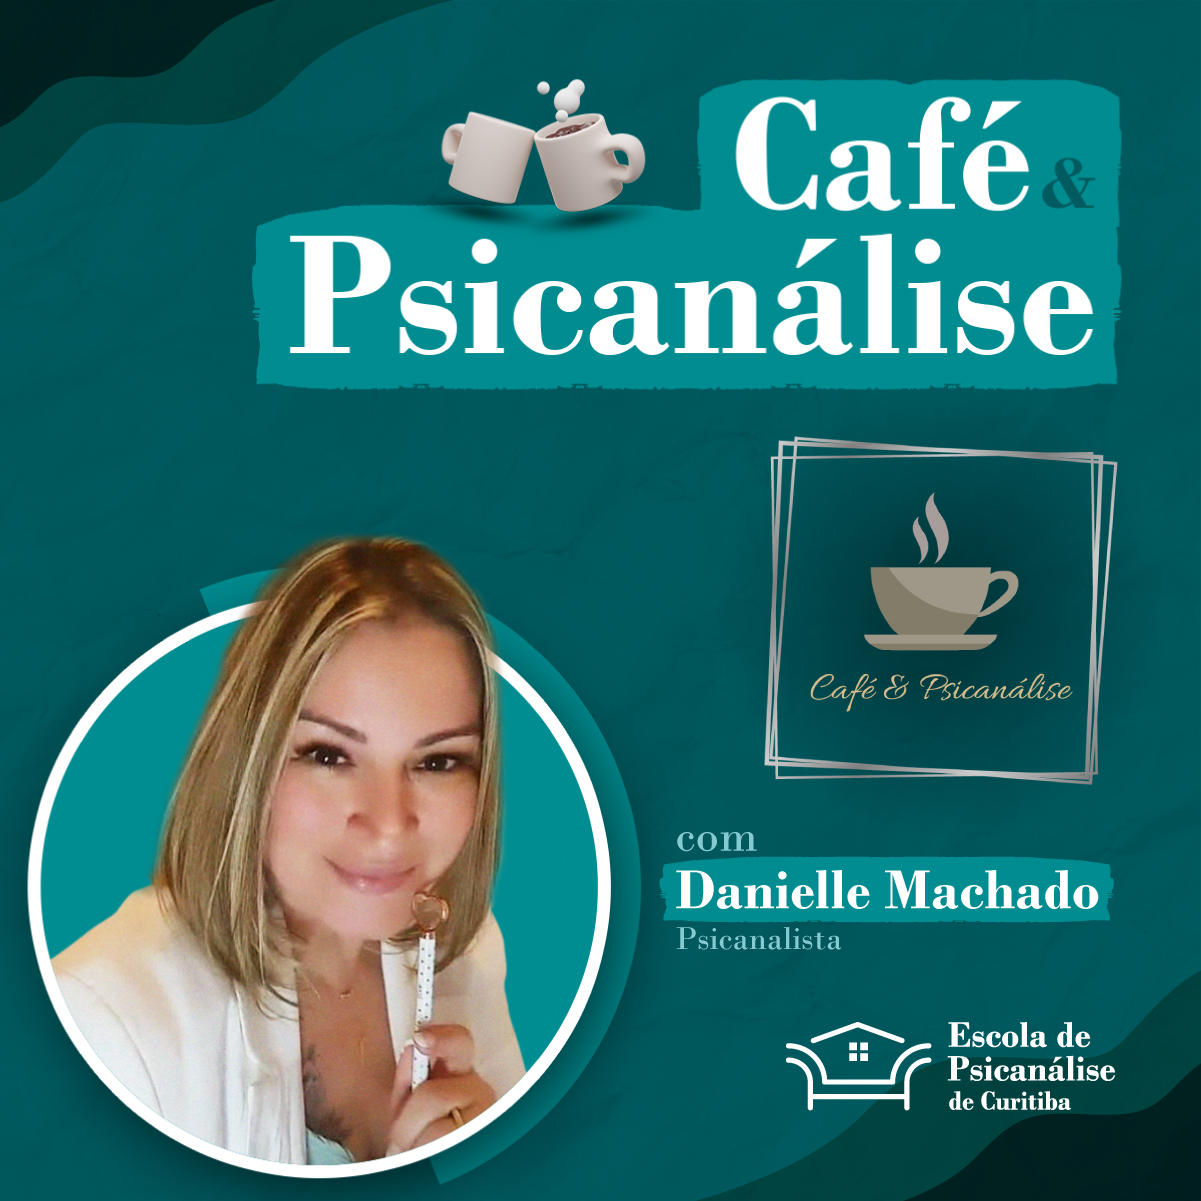 Post_Café & Psicanálise_01